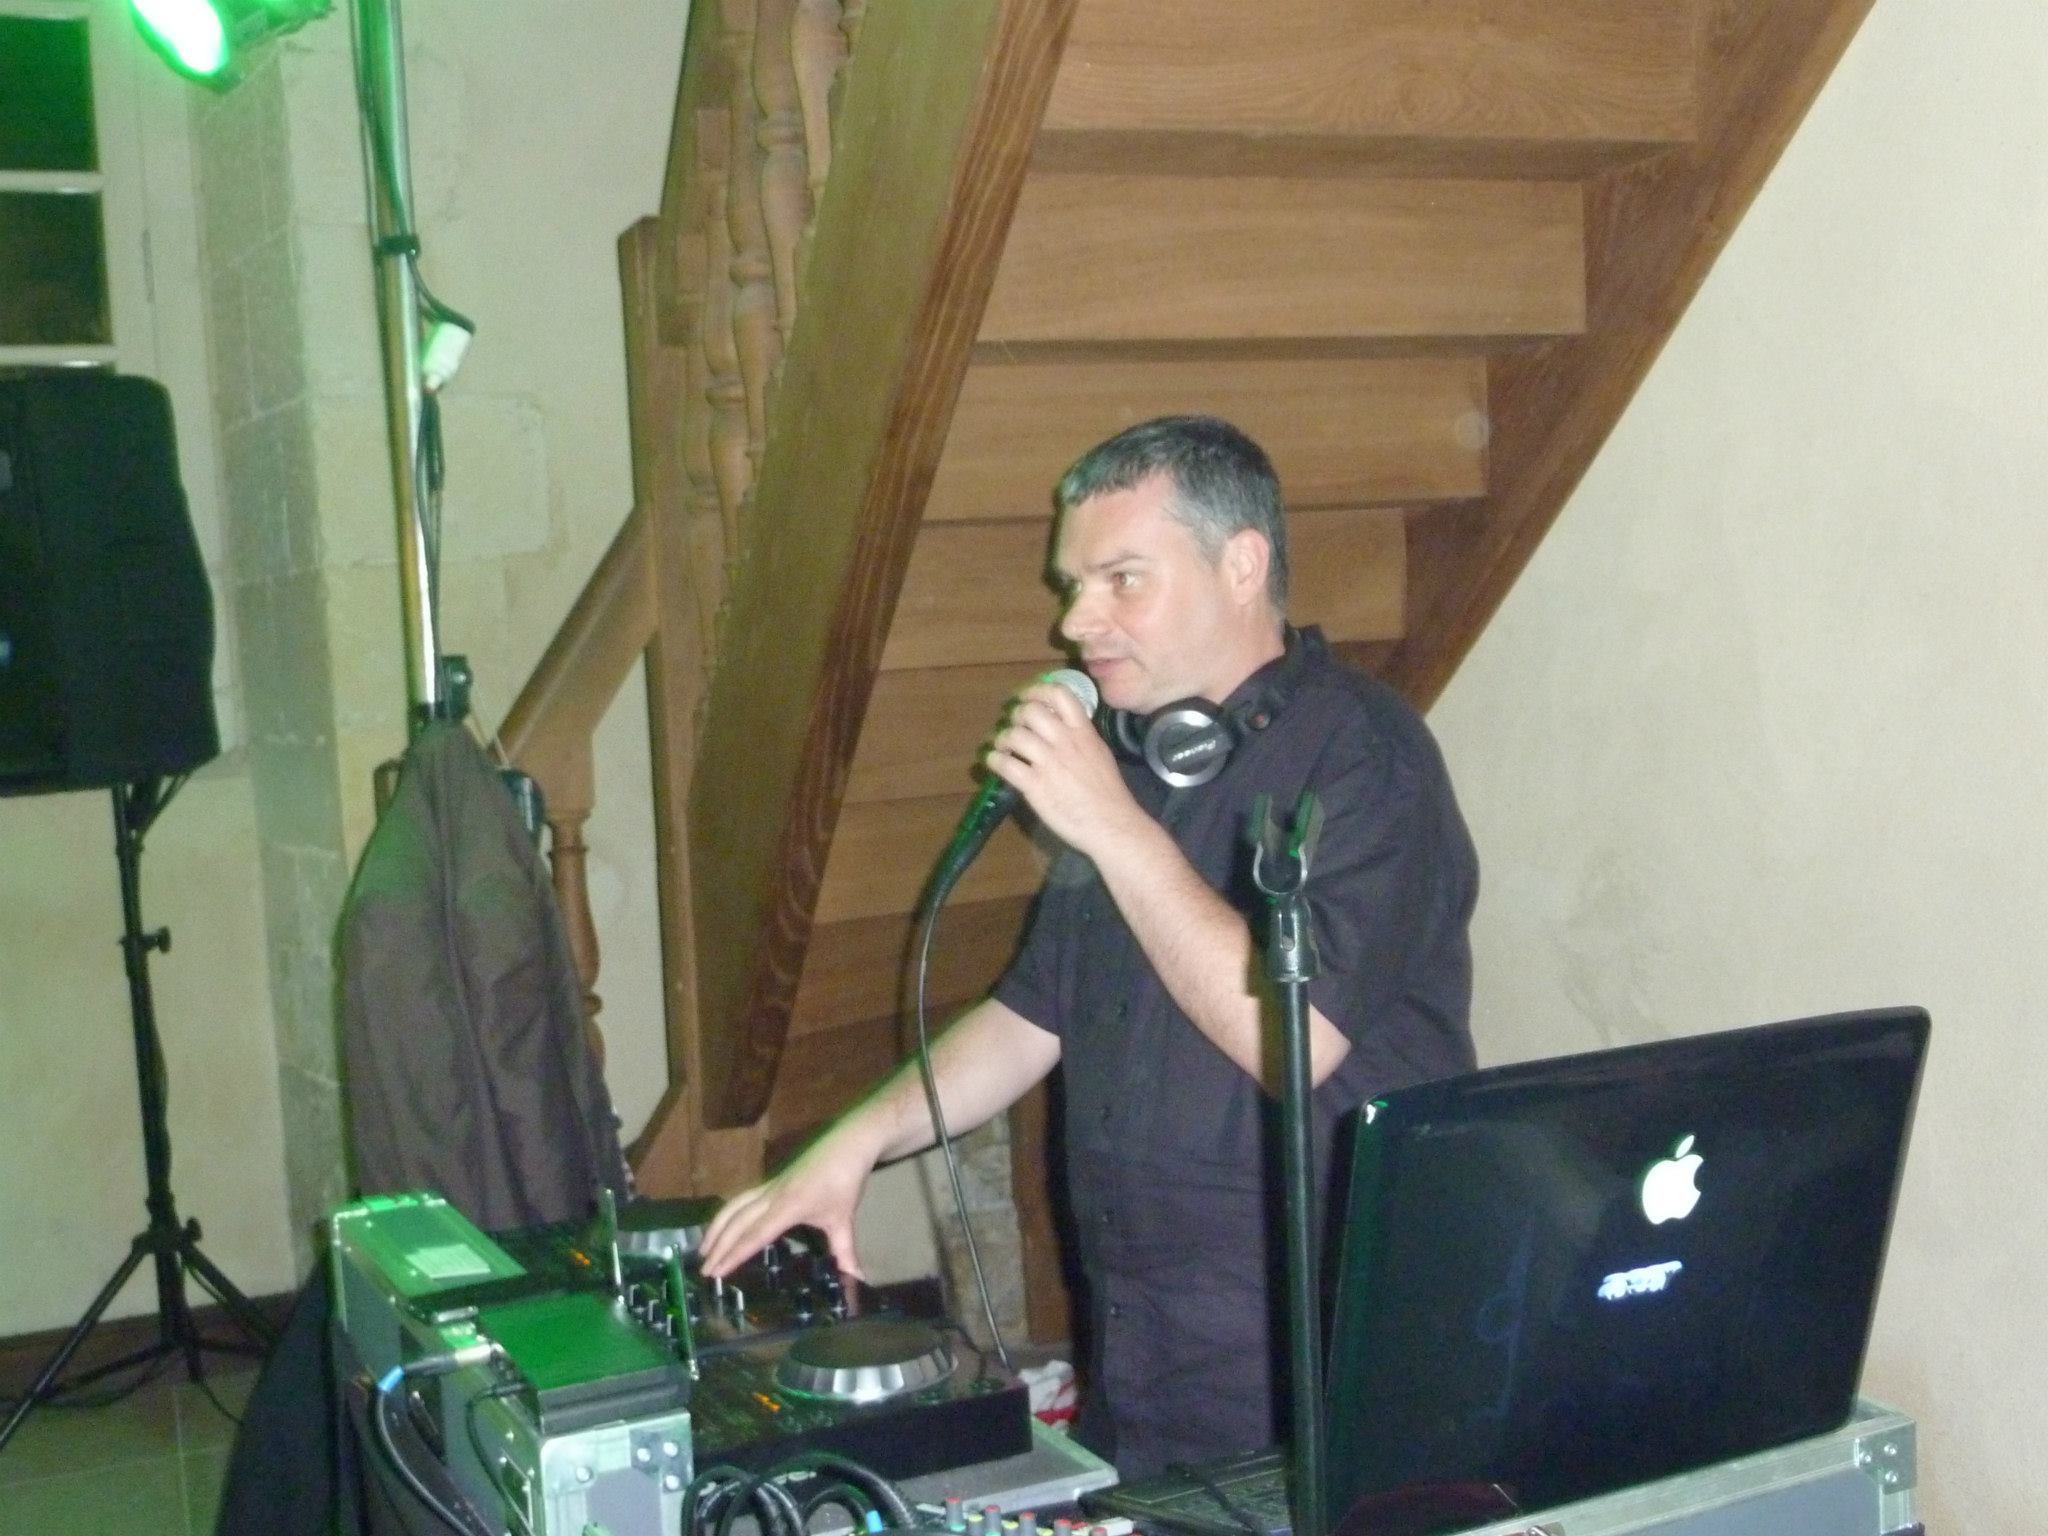 DJ pour animer une fête dans un orphelinat